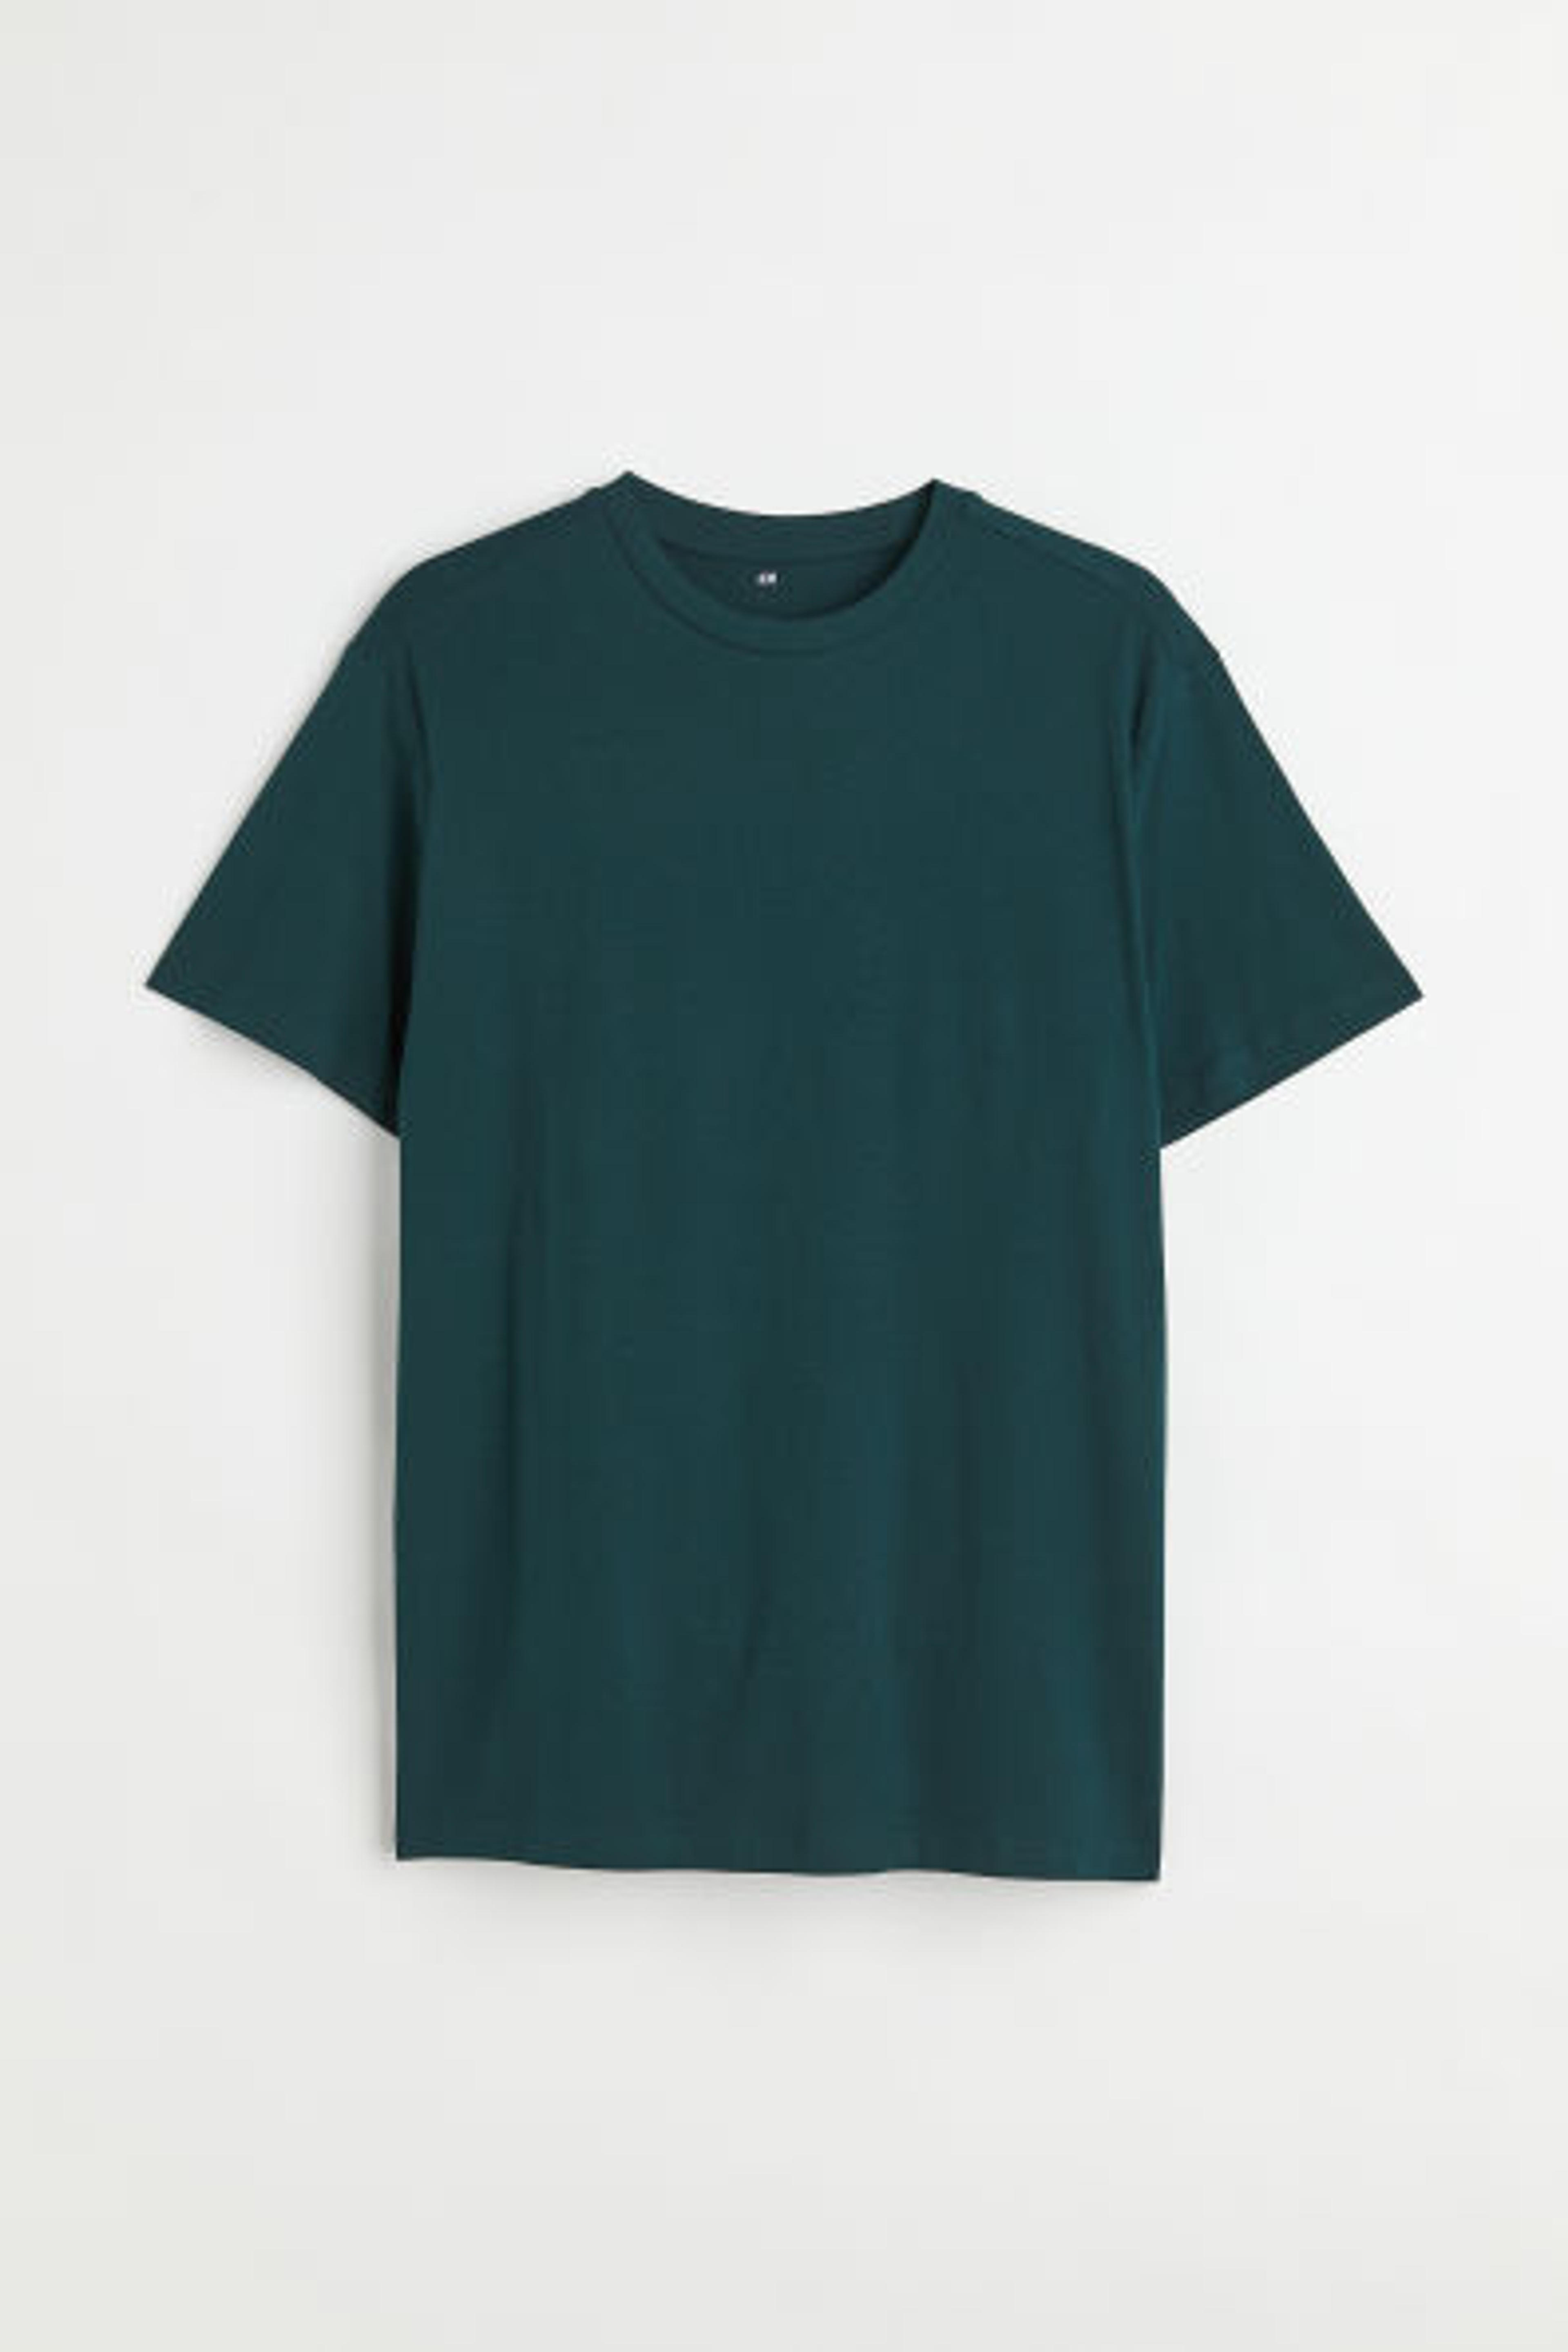 Regular Fit Crew-neck T-shirt - Dark turquoise - Men | H&M CA